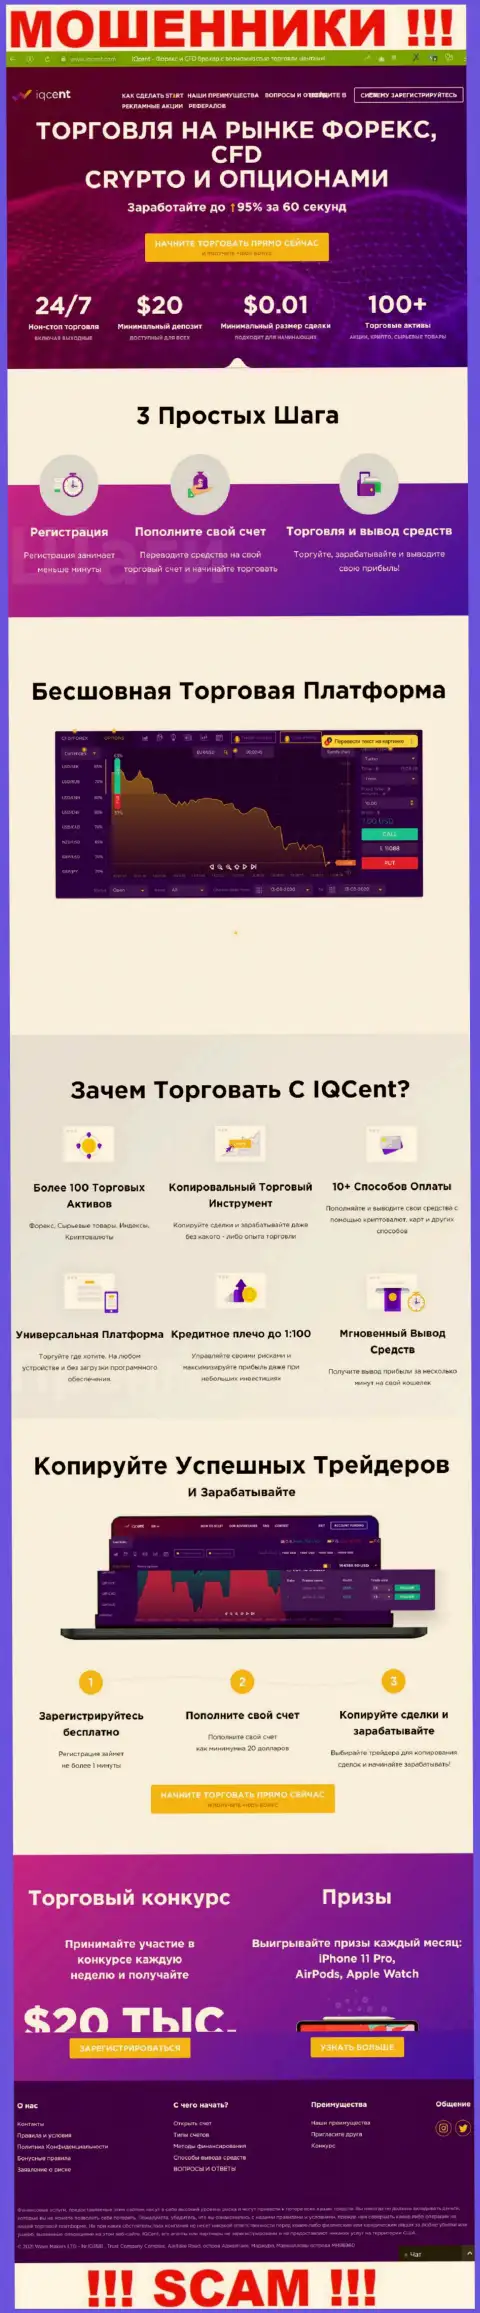 Официальный веб-сервис мошенников АйКьюЦент, переполненный информацией для наивных людей